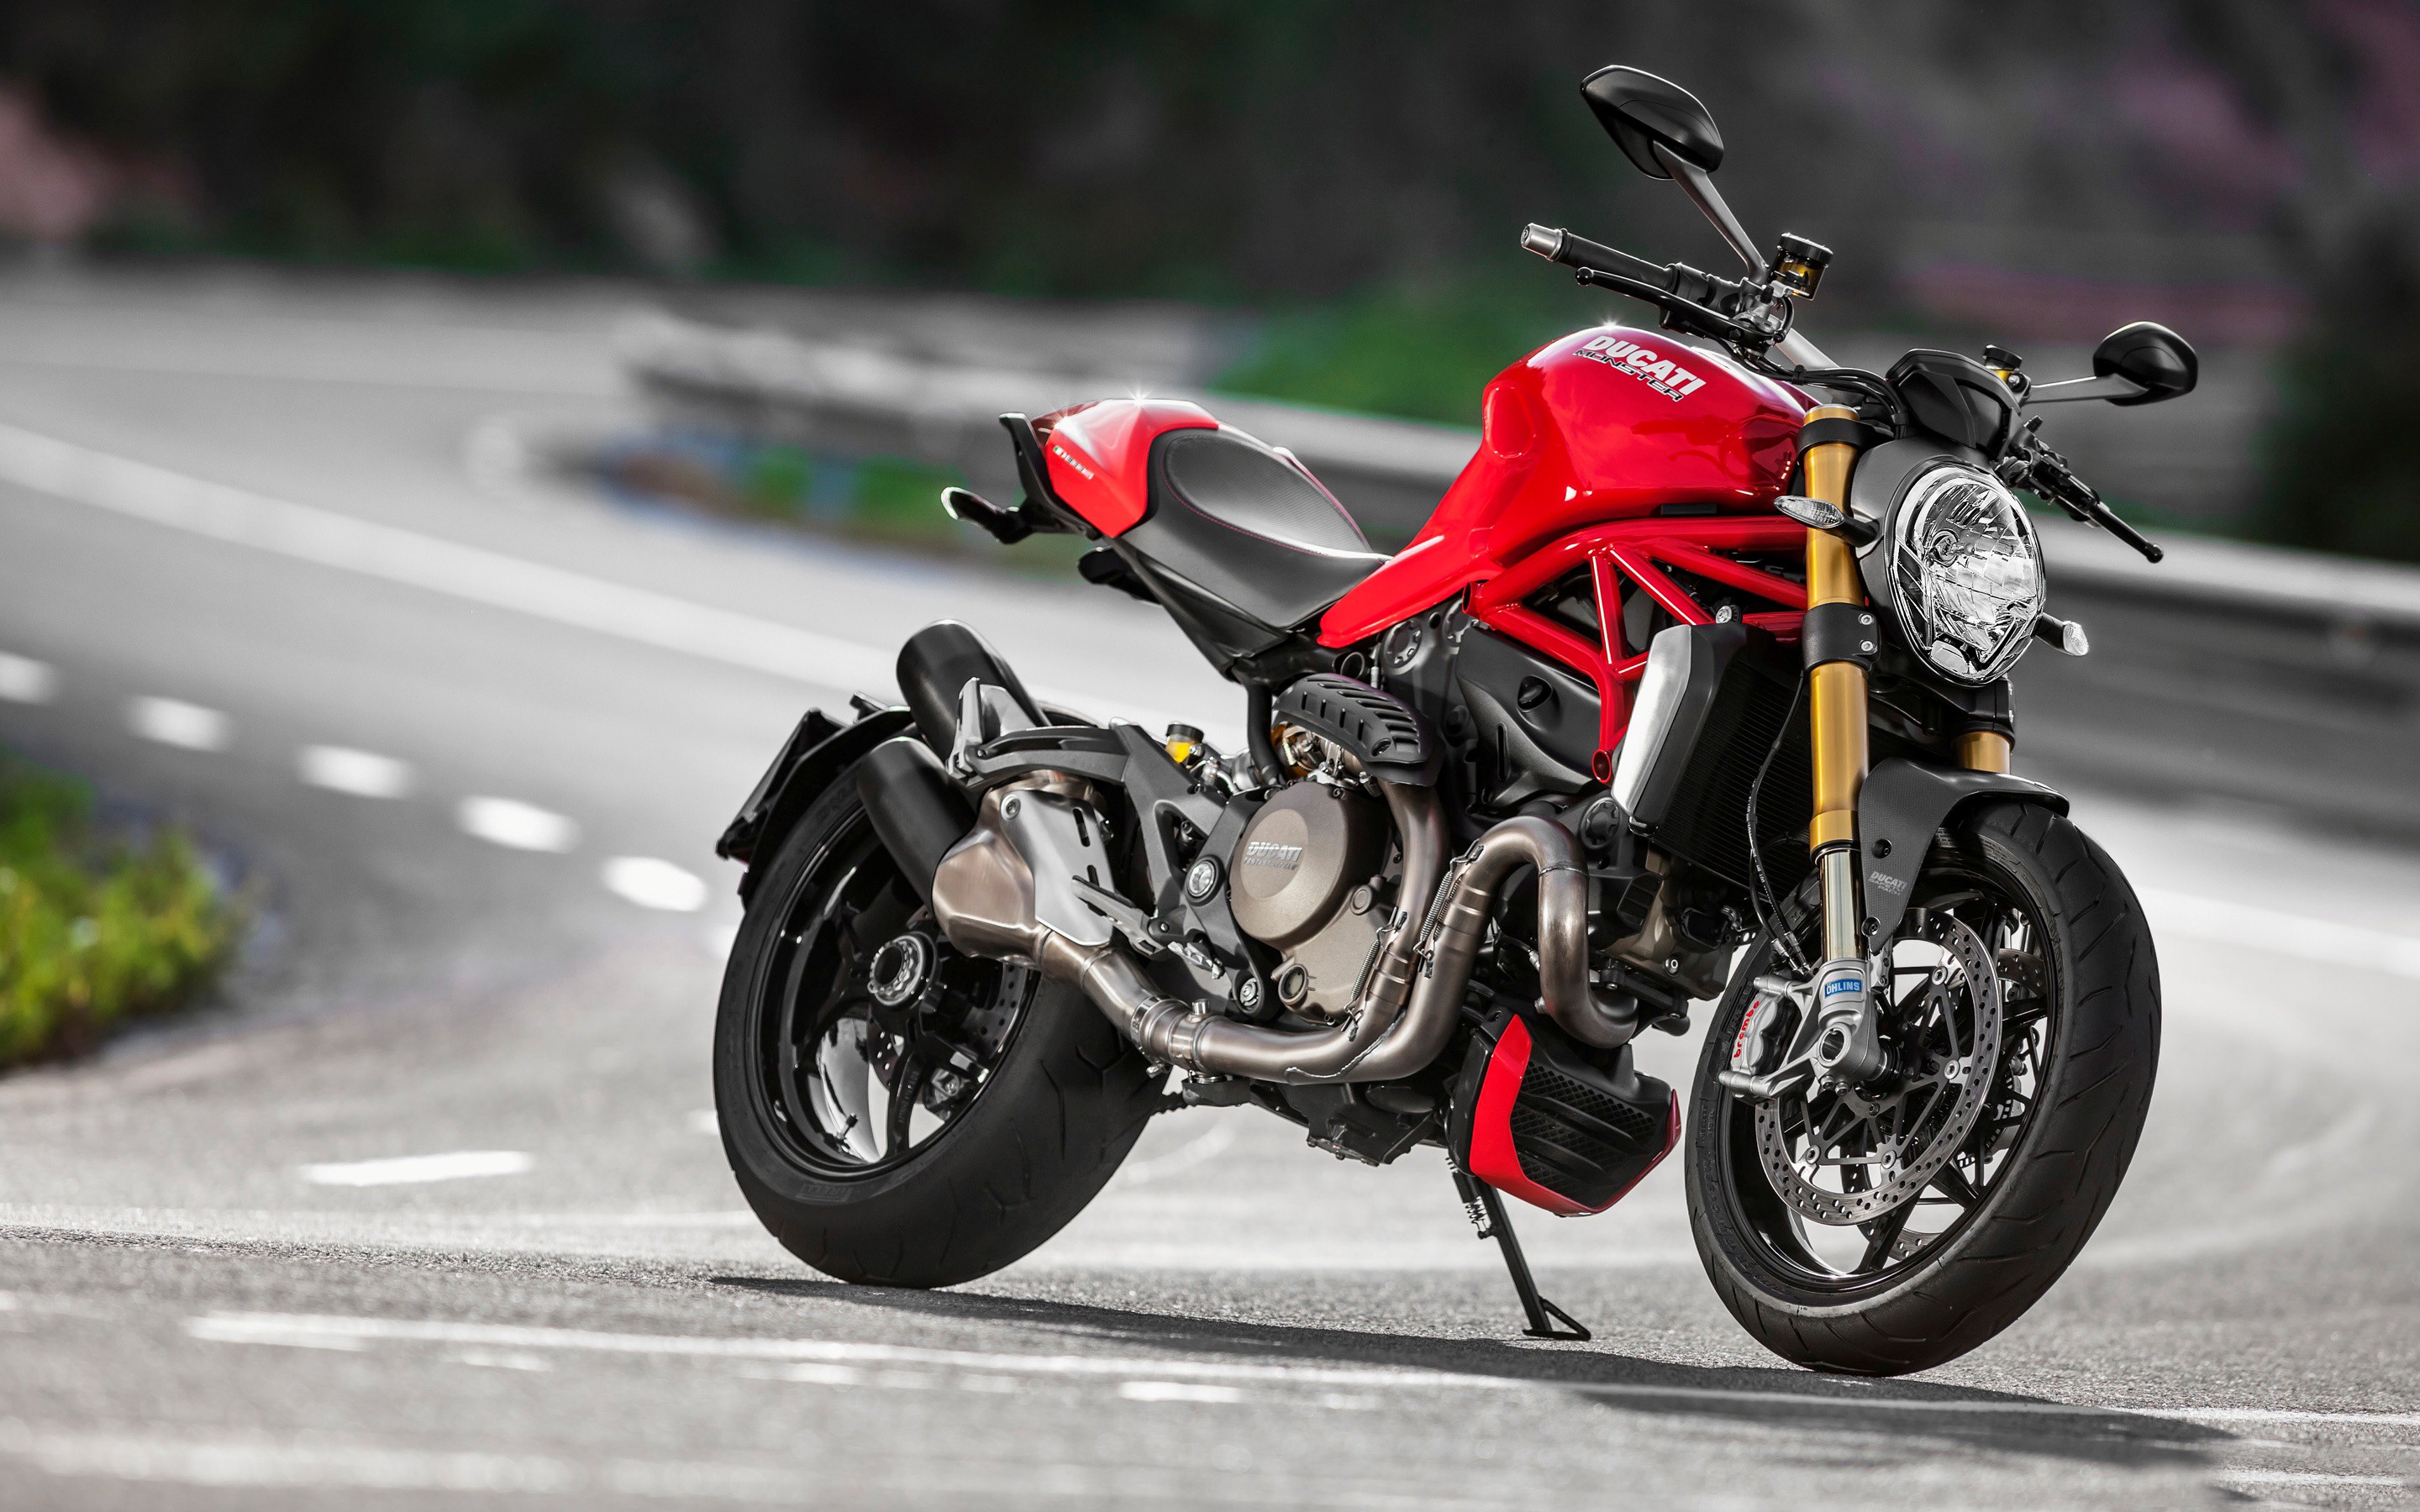 Latest Ducati Monster Bike Image - Ducati Monster 1200 - HD Wallpaper 